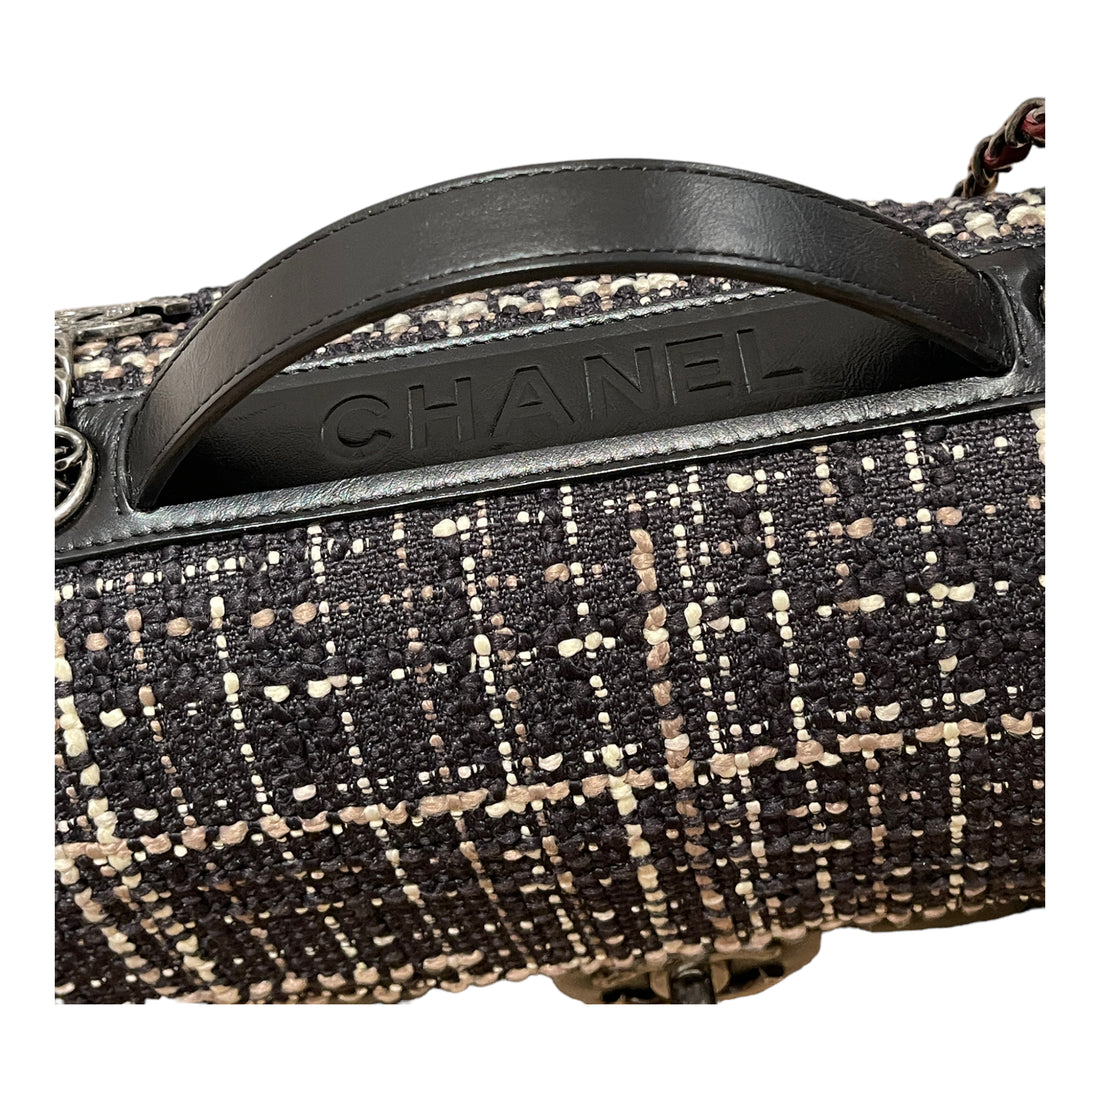 Chanel Medium Flapbag mit Tweedklappe